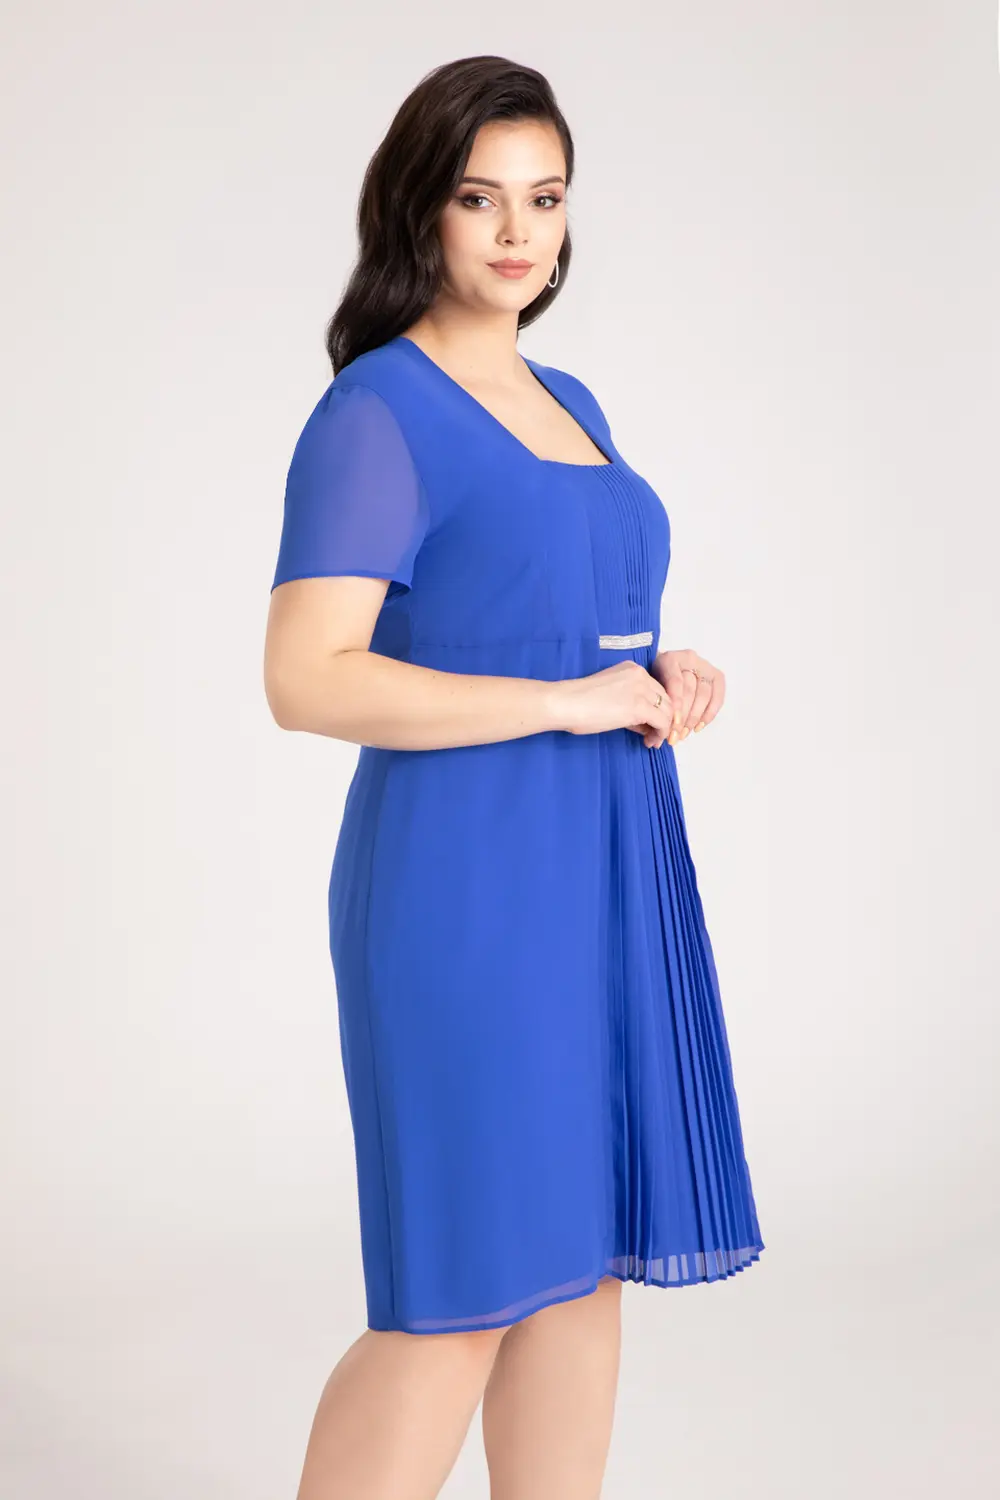 Kobaltowa sukienka wizytowa szyfonowa plus size polska marka Vito Vergelis